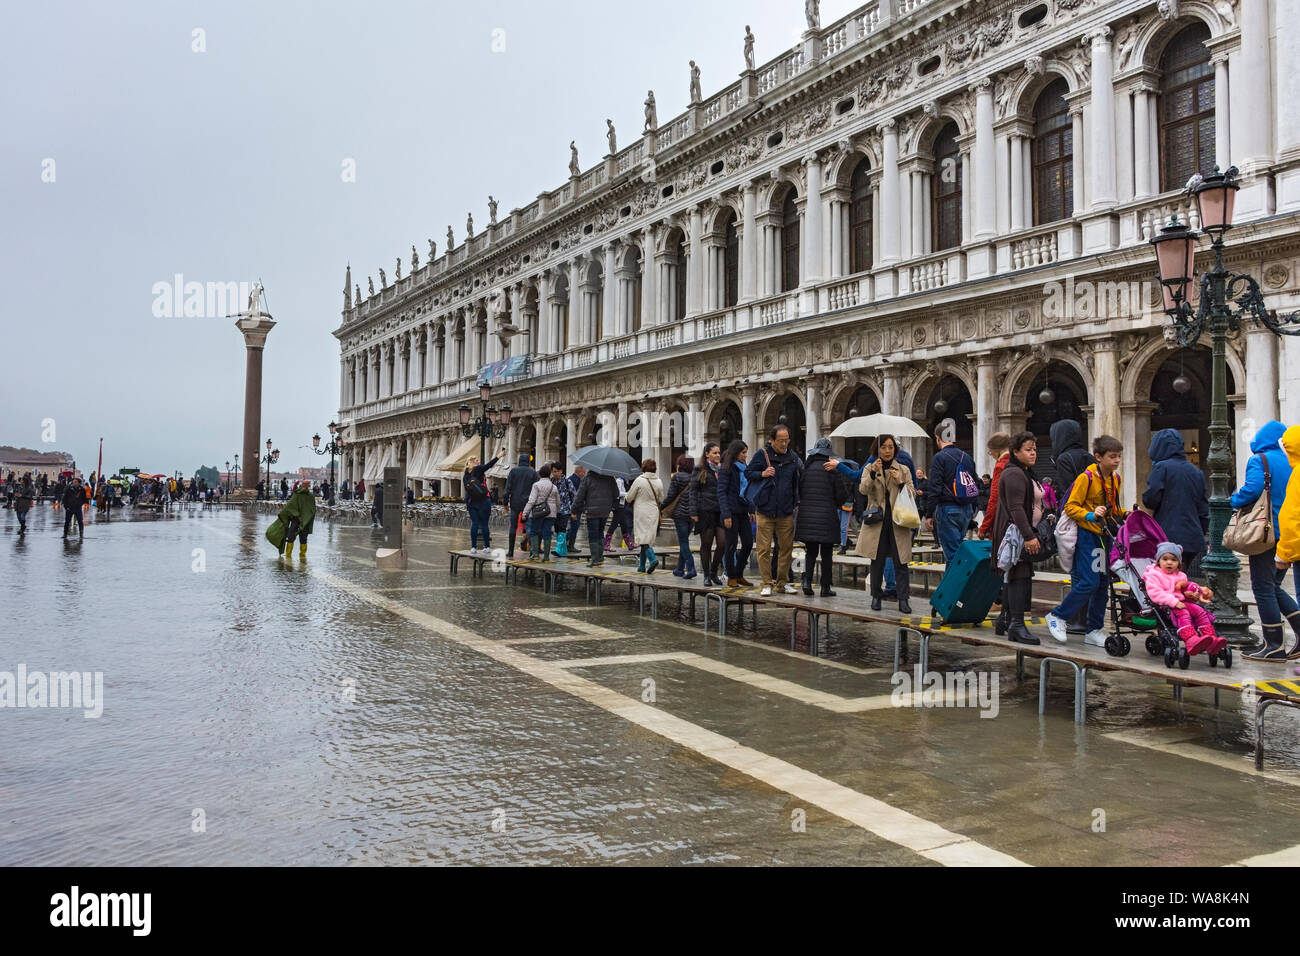 Les gens qui marchent sur les plates-formes élevées au cours d'une acqua alta (haute) de l'eau de cause à la Biblioteca building, Piazzetta di San Marco, Venise, Italie Banque D'Images